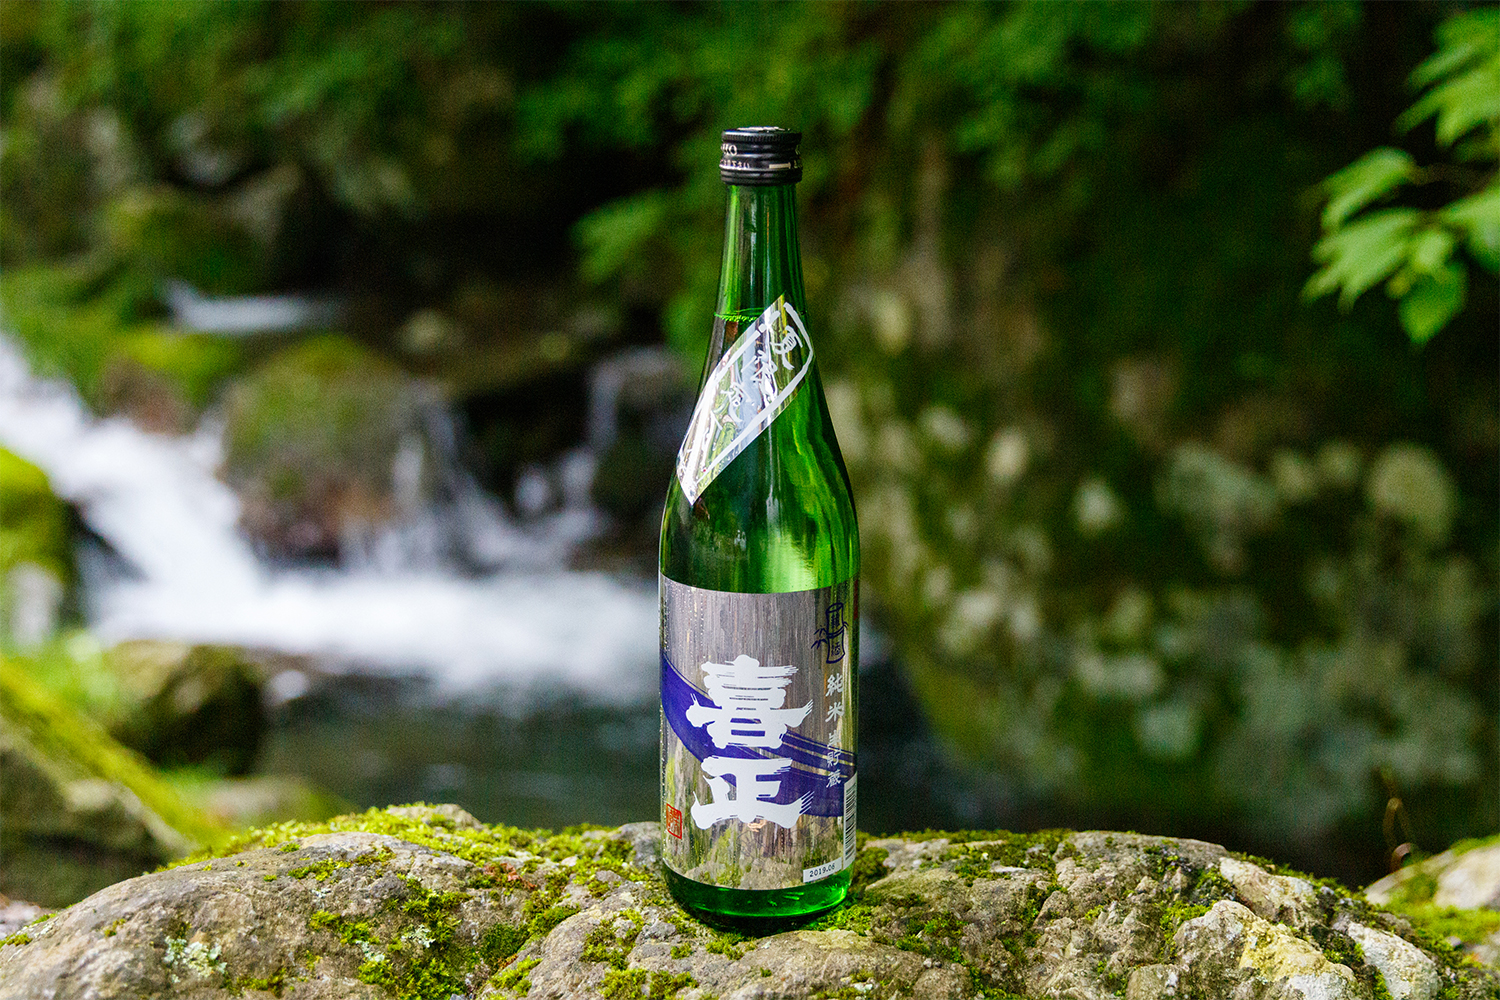 焚き火とバーベキューに地元の日本酒が揃えば、贅沢な時間は約束されたようなものだ